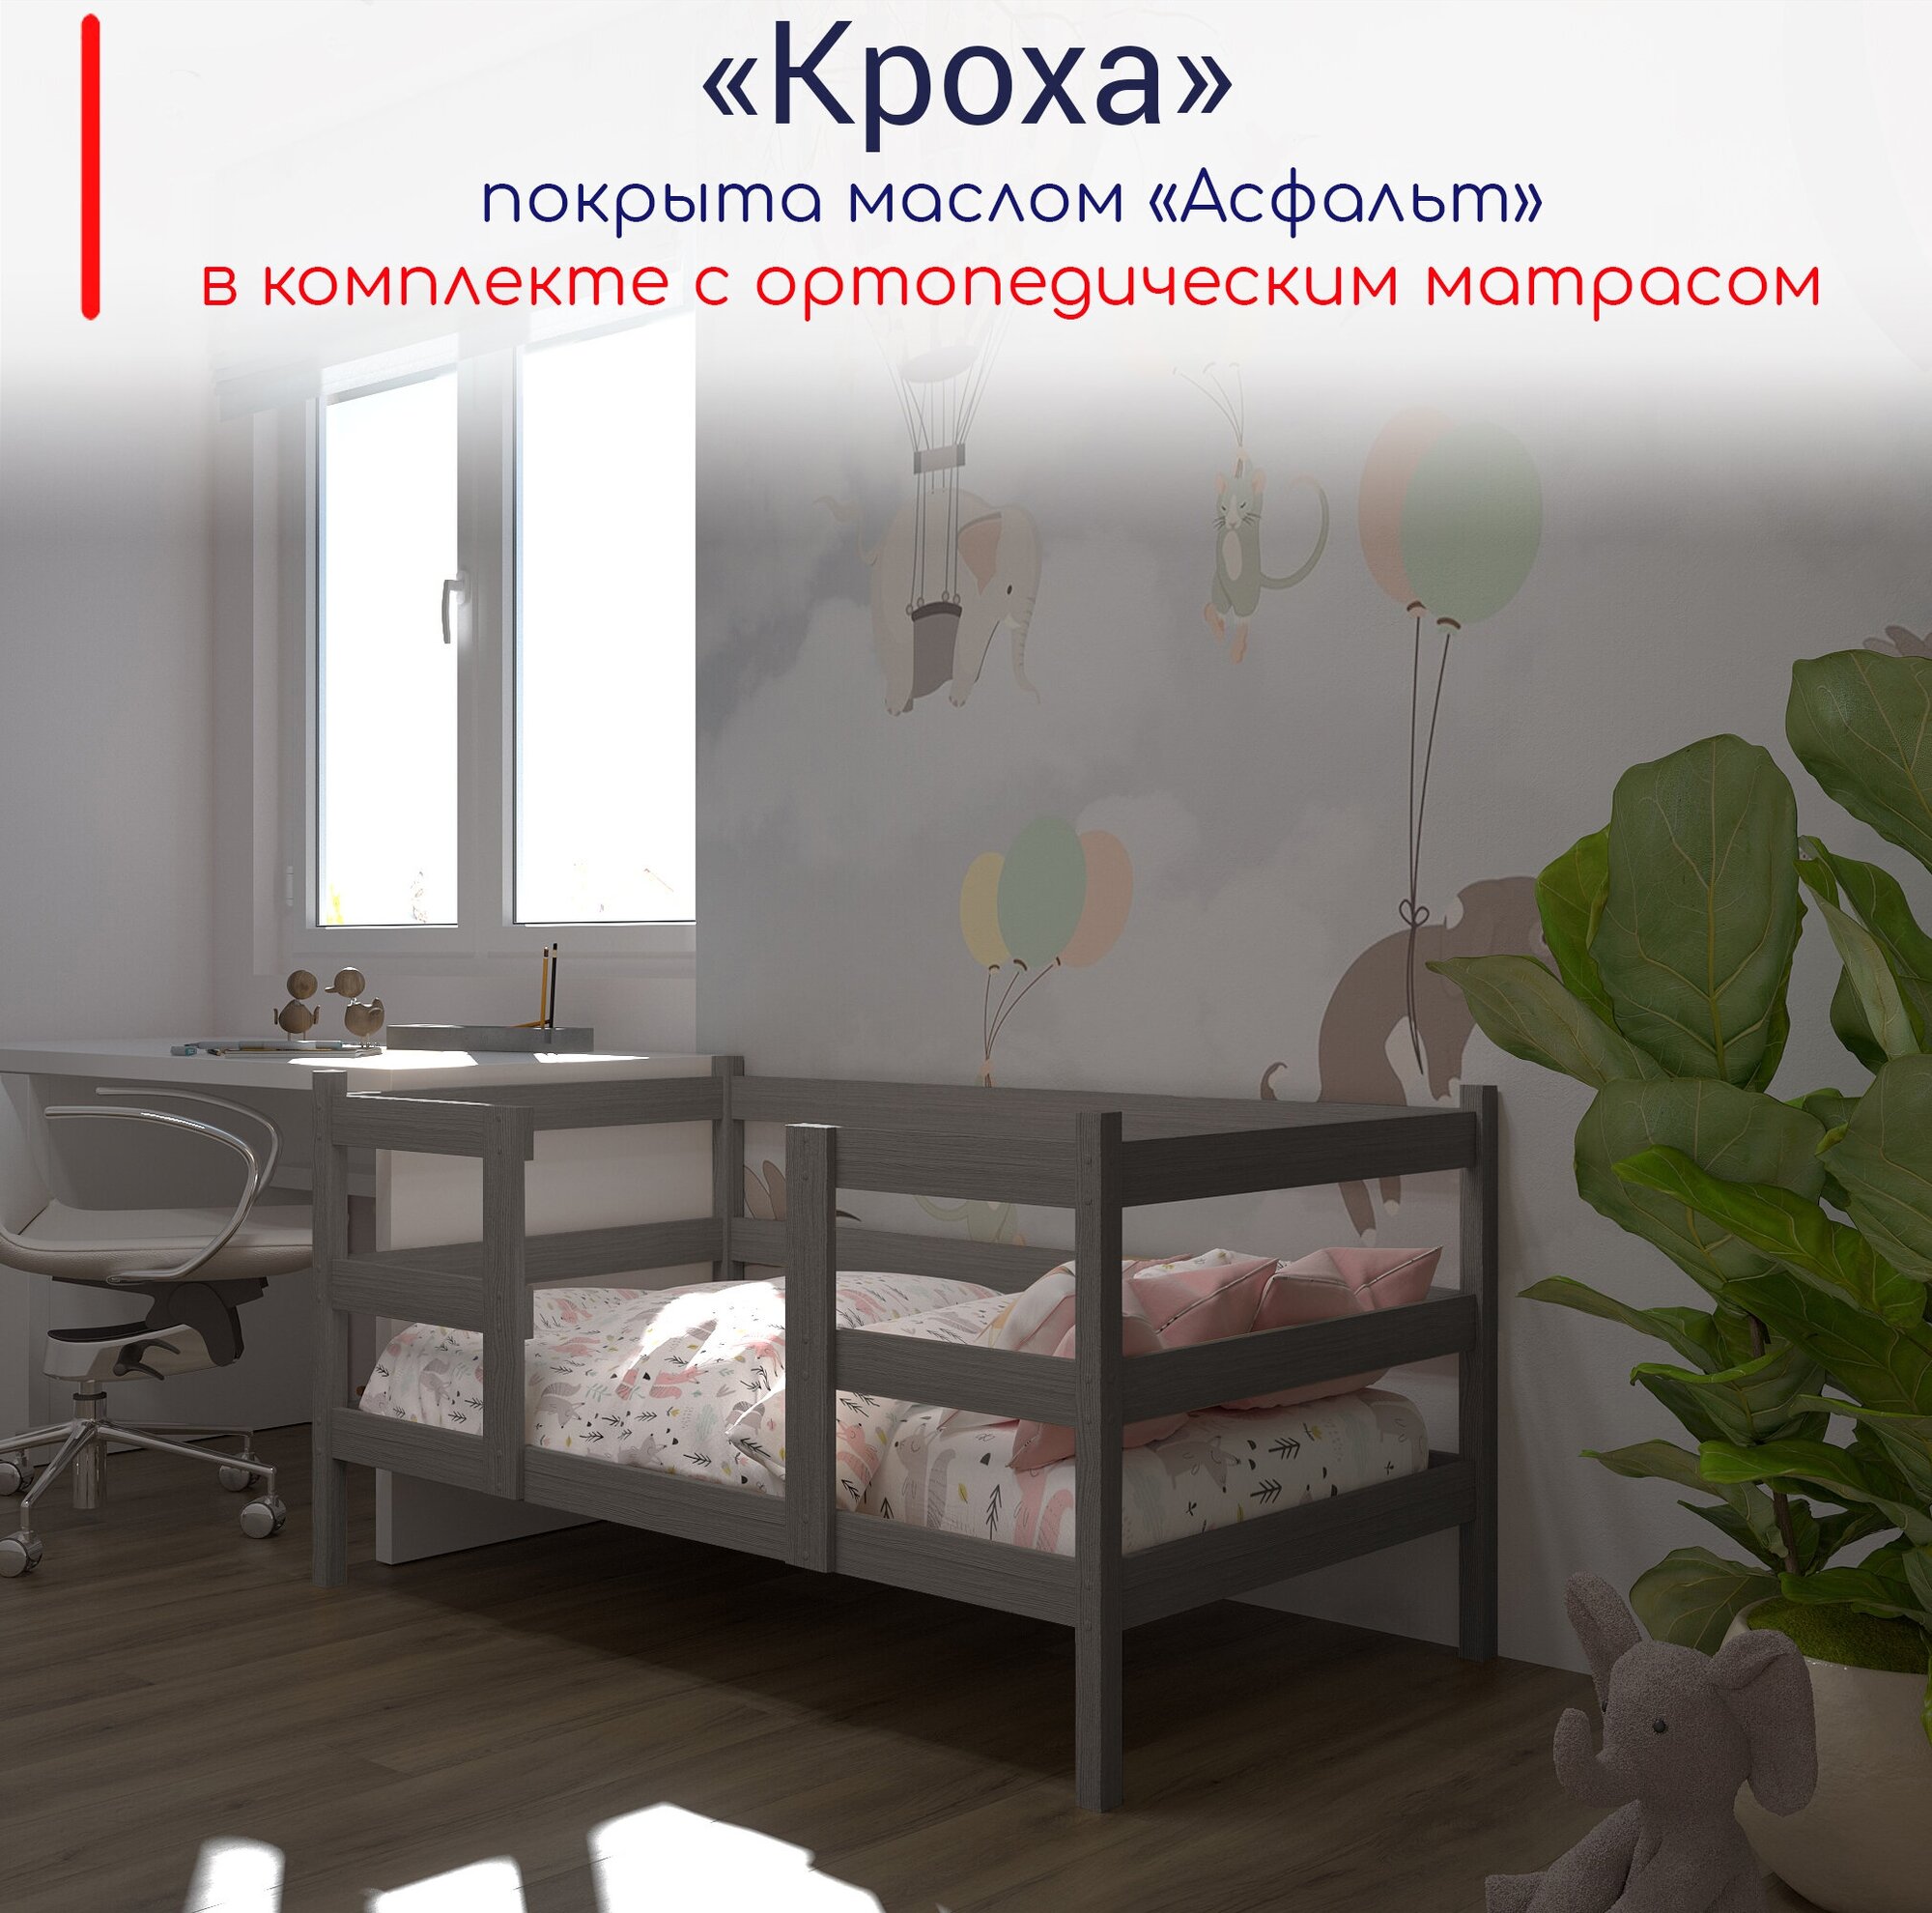 Кровать детская, подростковая "Кроха", спальное место 180х90, в комплекте с ортопедическим матрасом, масло "Асфальт", из массива